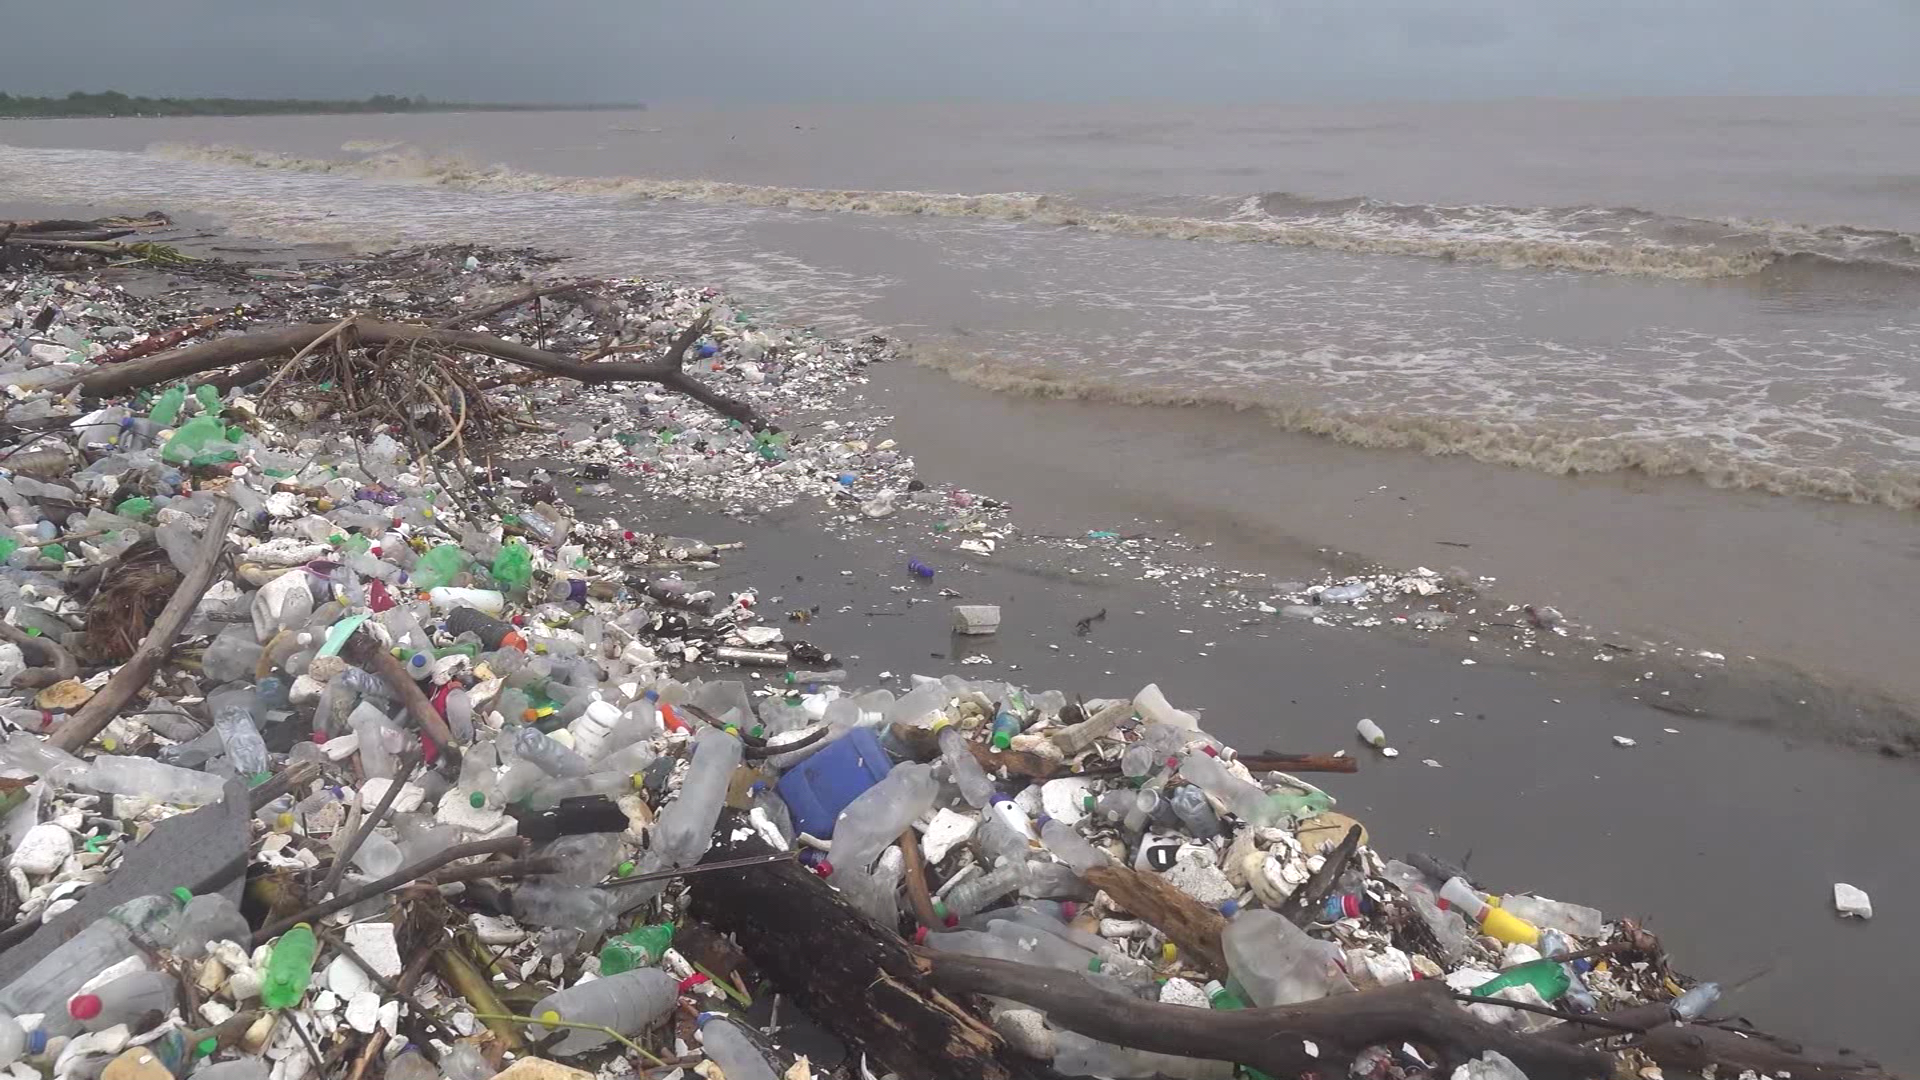 Toneladas de basura proveniente de Guatemala inundan playas de Honduras y  ponen en riesgo la vida marina y el turismo - CNN Video